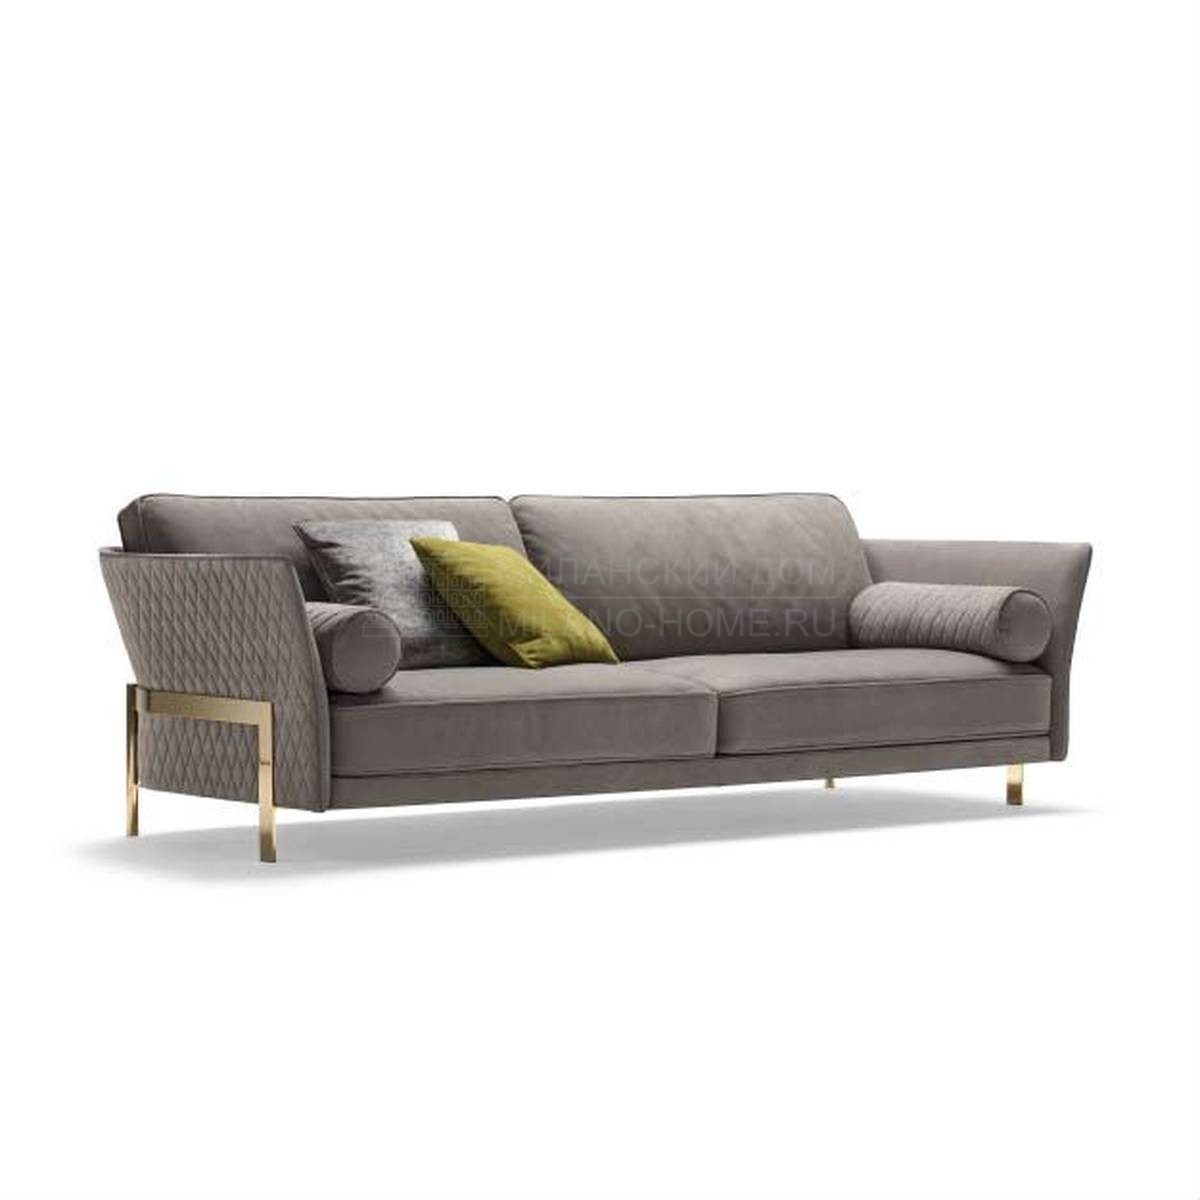 Прямой диван Cosmo sofa из Италии фабрики ANGELO CAPPELLINI OPERA